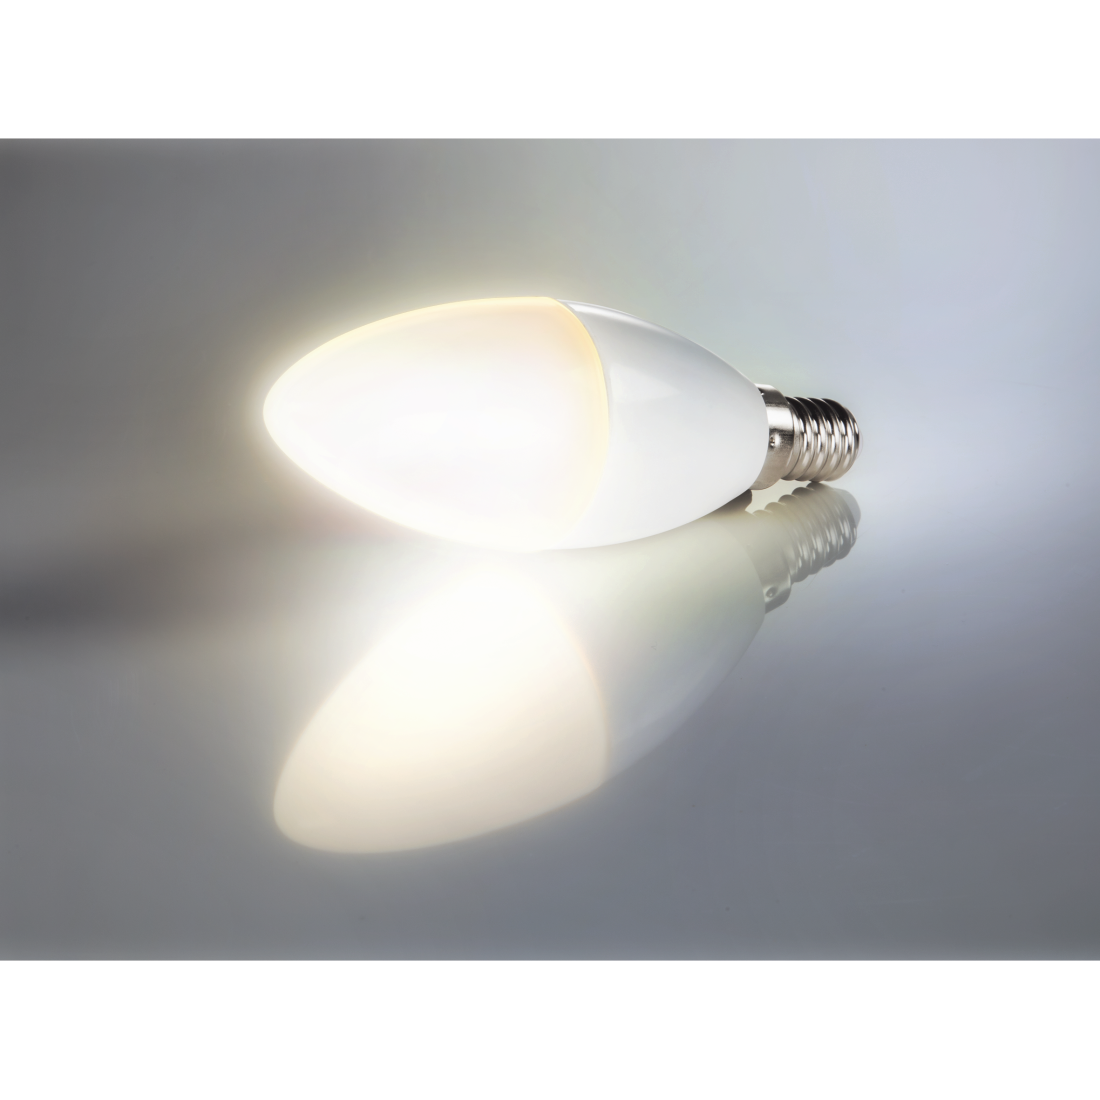 abx4 High-Res Image4 - Xavax, Ampoule LED, E14, 806 lm rempl. 60 W, ampoule bougie, blanc chaud